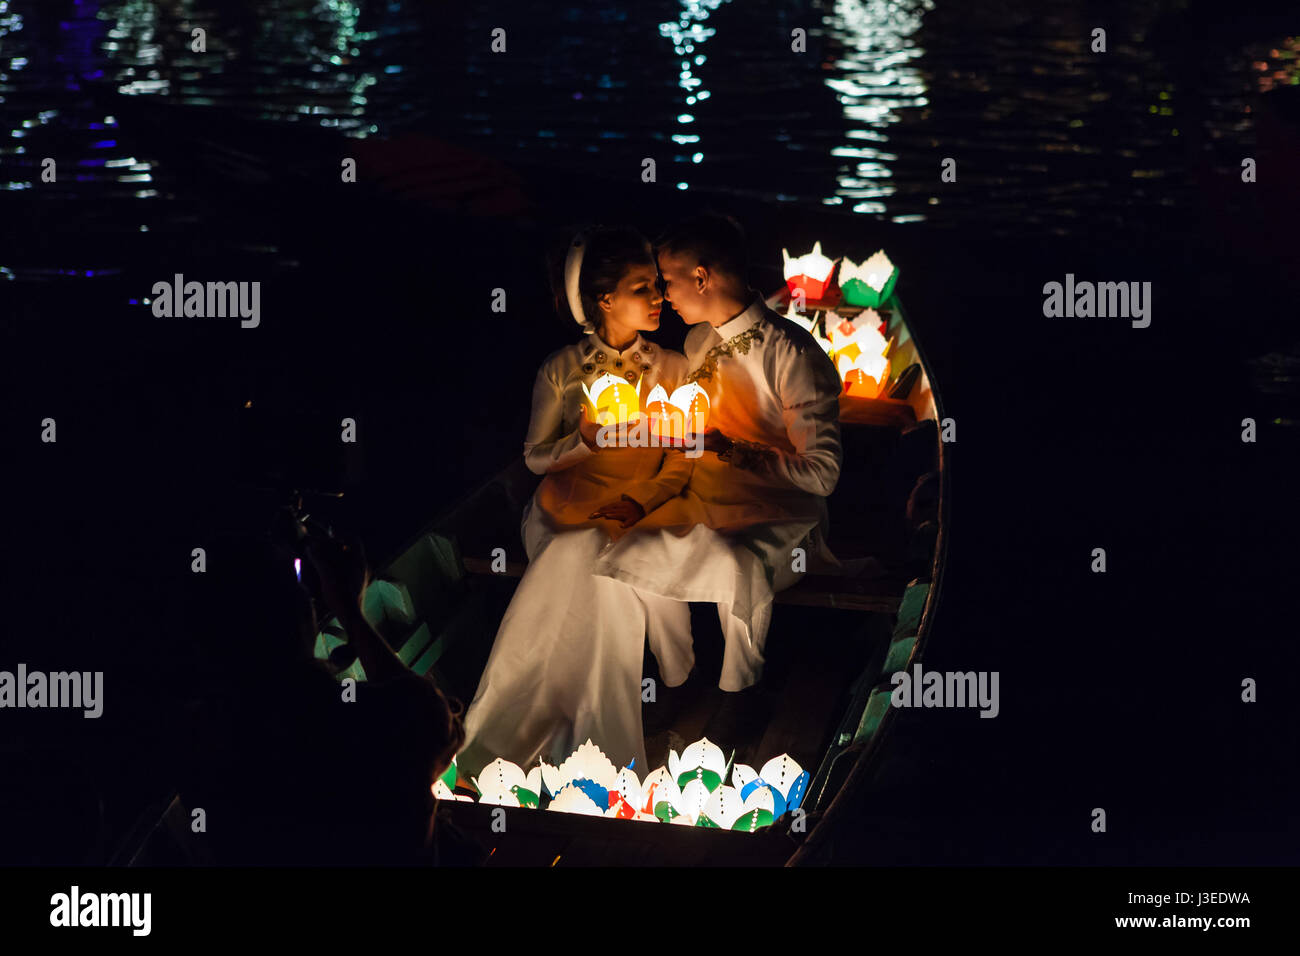 Hoi An, Vietnam - 11 mars 2017 : épouses vietnamiennes en costume traditionnel sur le bateau, festival Pleine Lune nuit Banque D'Images